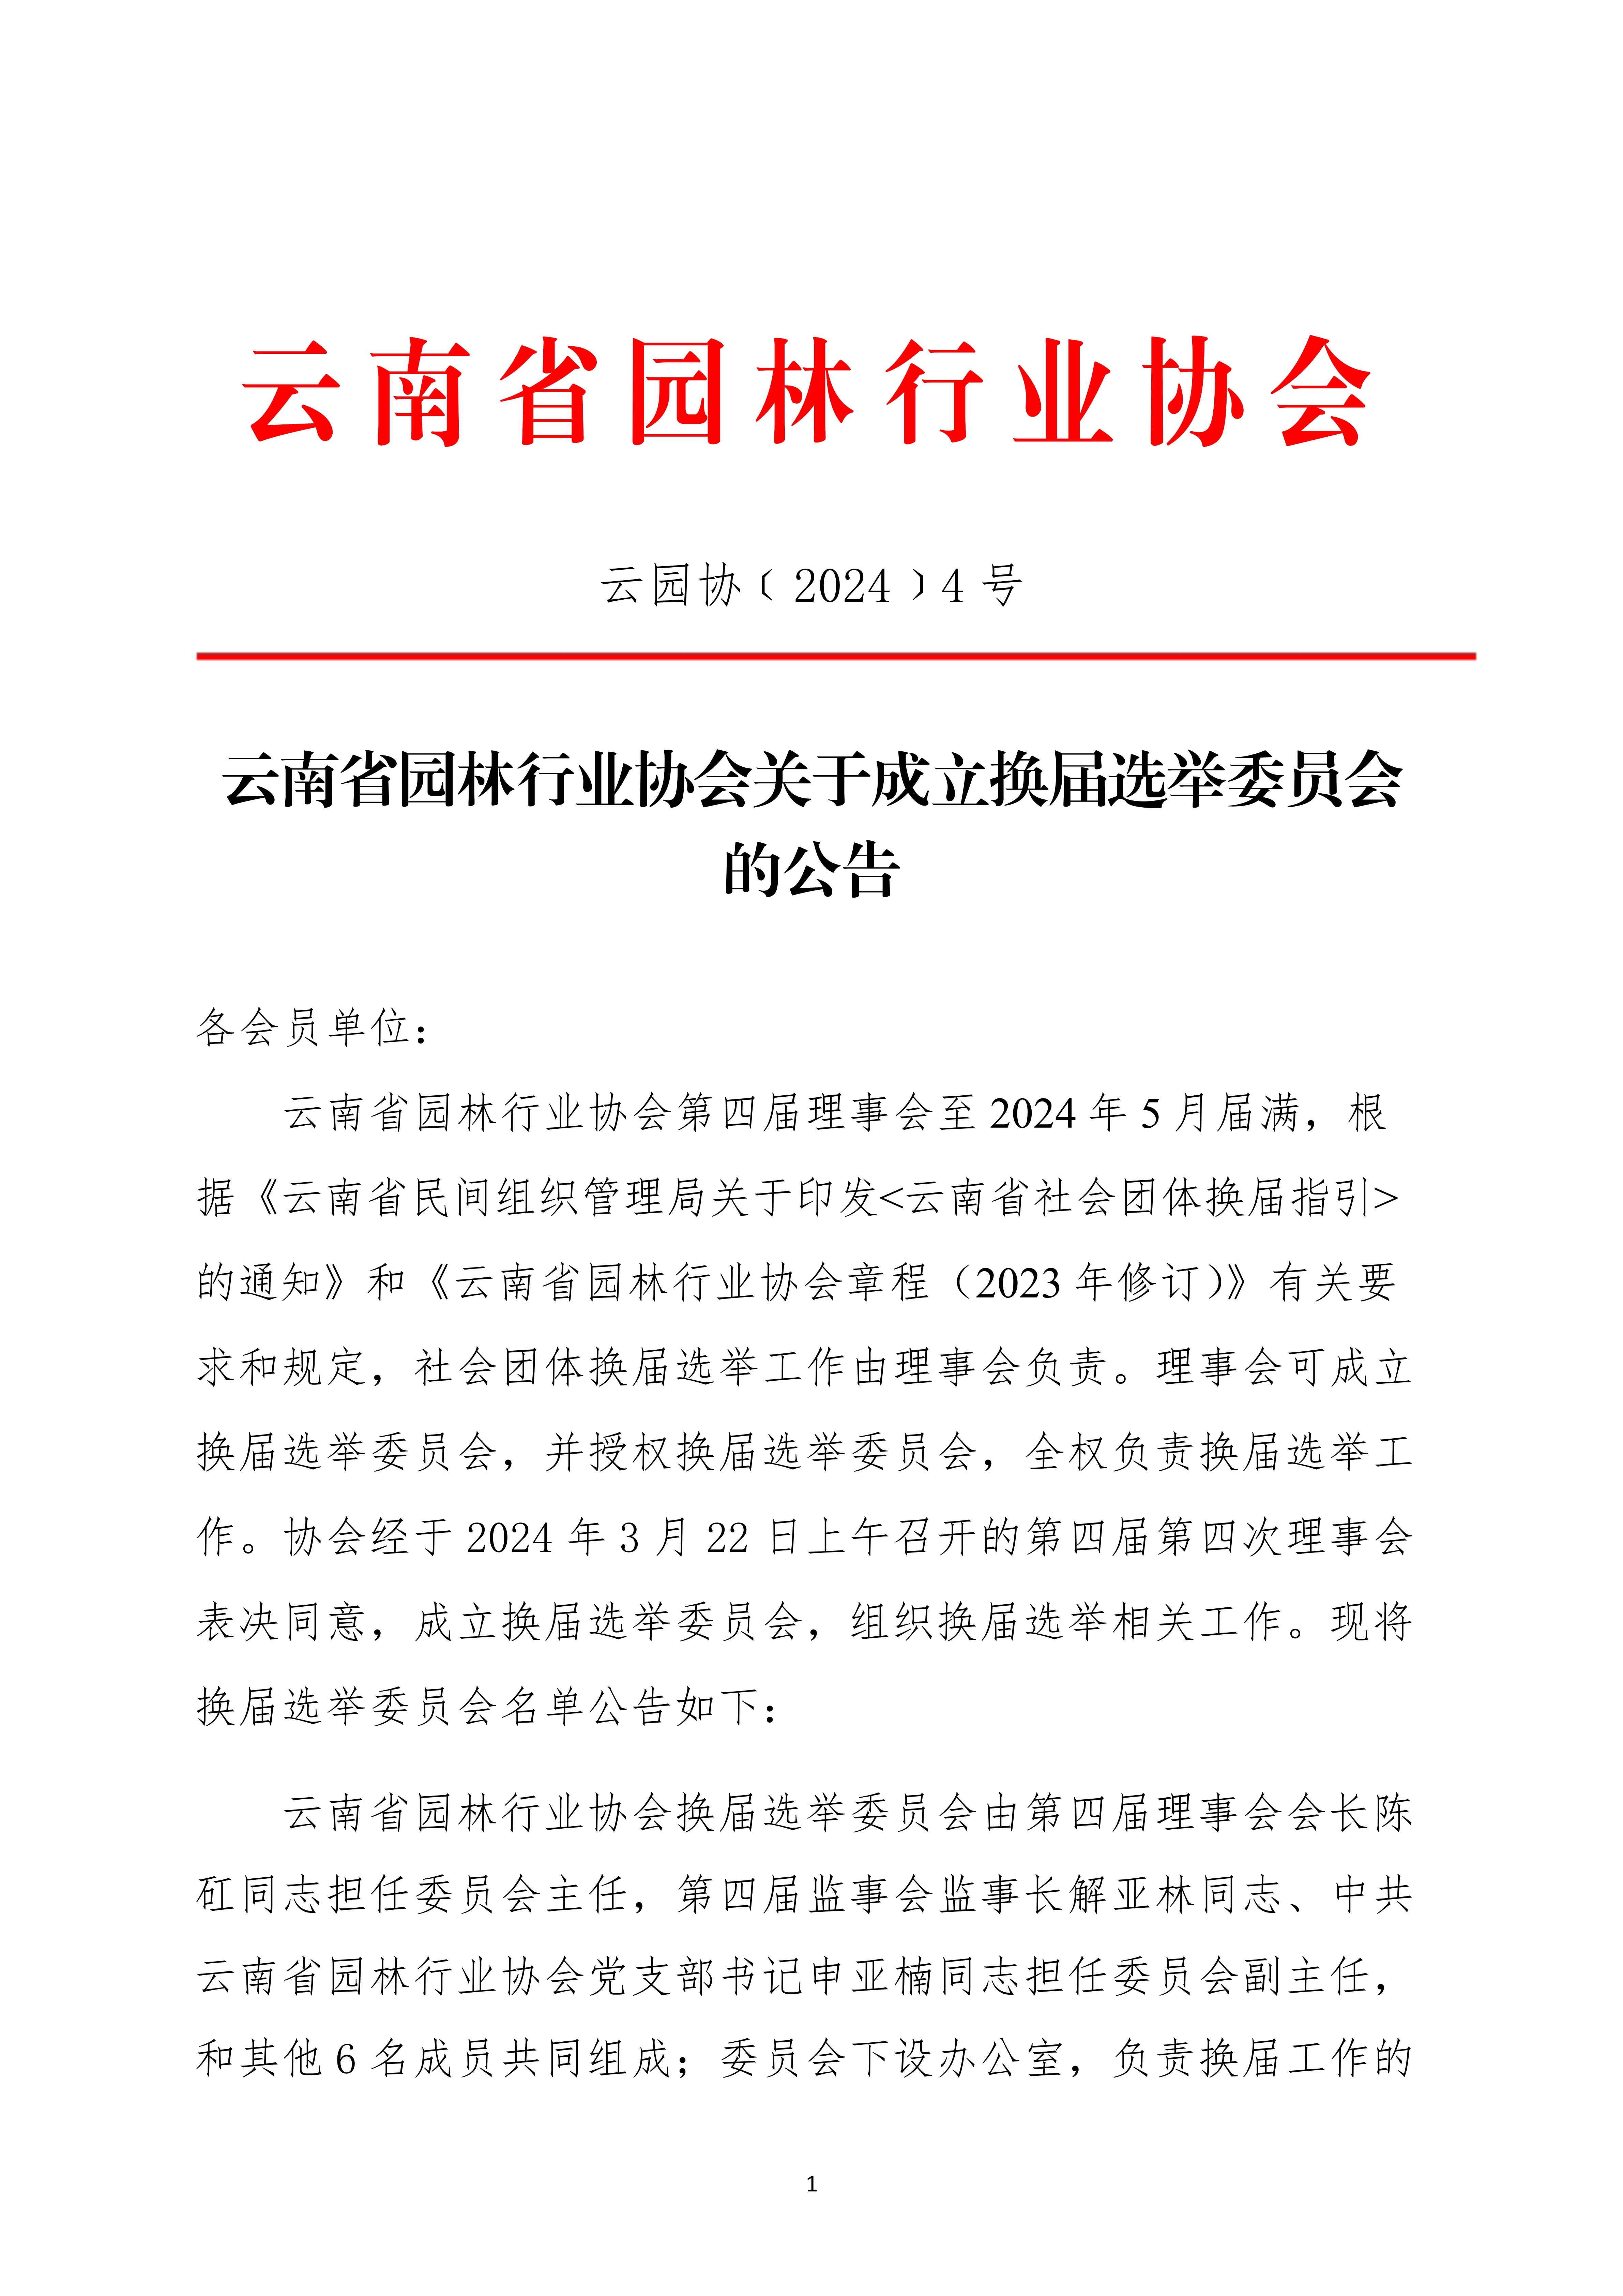 4云南省园林行业协会关于成立换届选举委员会的公告(1)_1.jpg